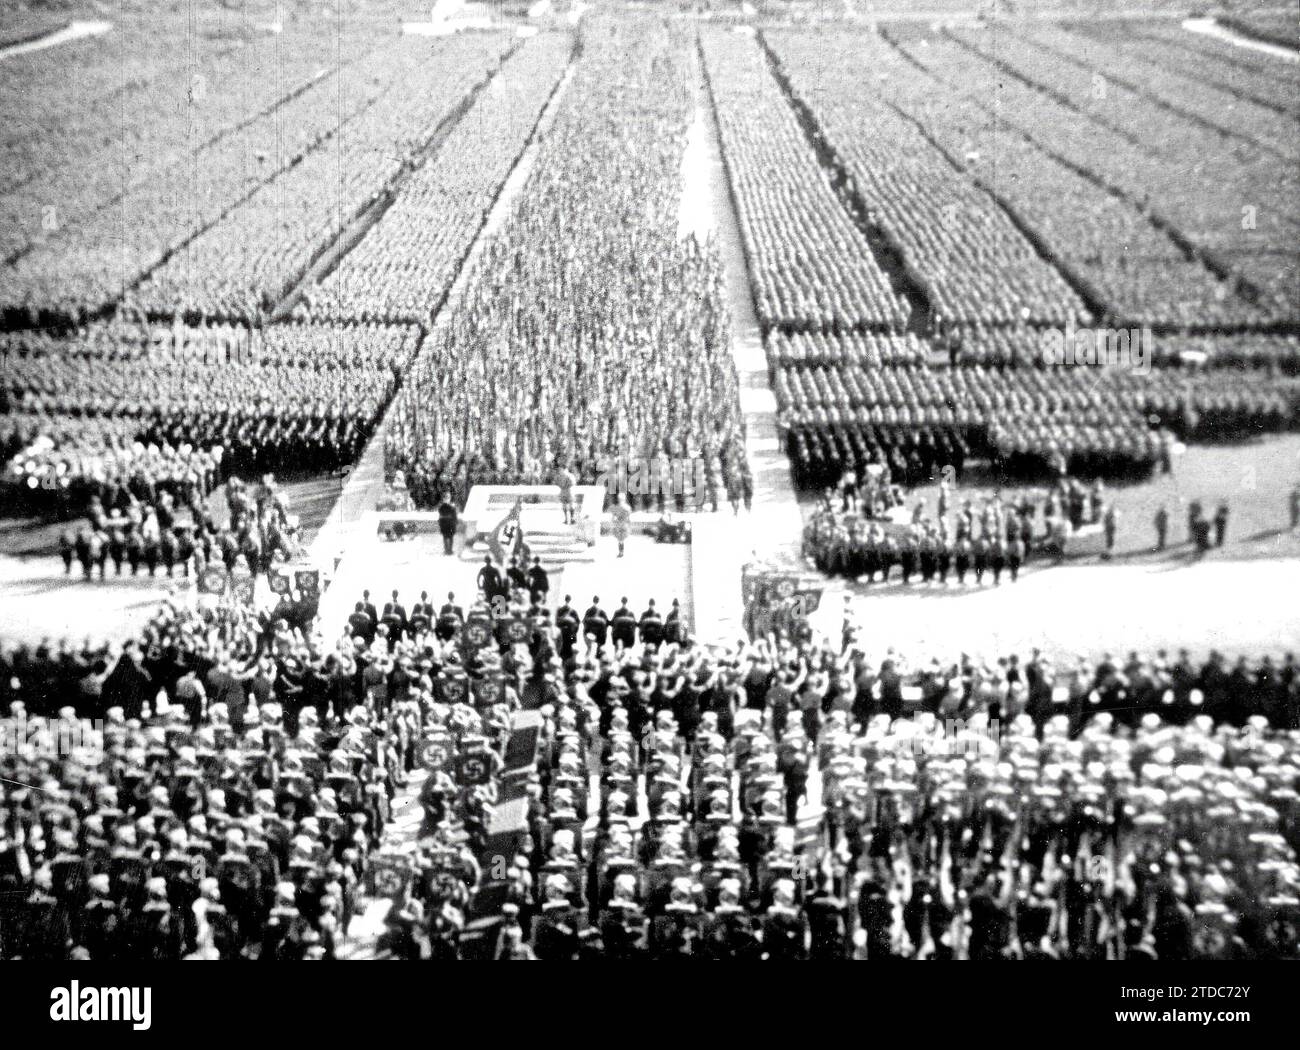 12/31/1934. Riunione del partito nazionalsocialista in Germania. Crediti: Album / Archivo ABC / Vicente Antonio Pineda Foto Stock